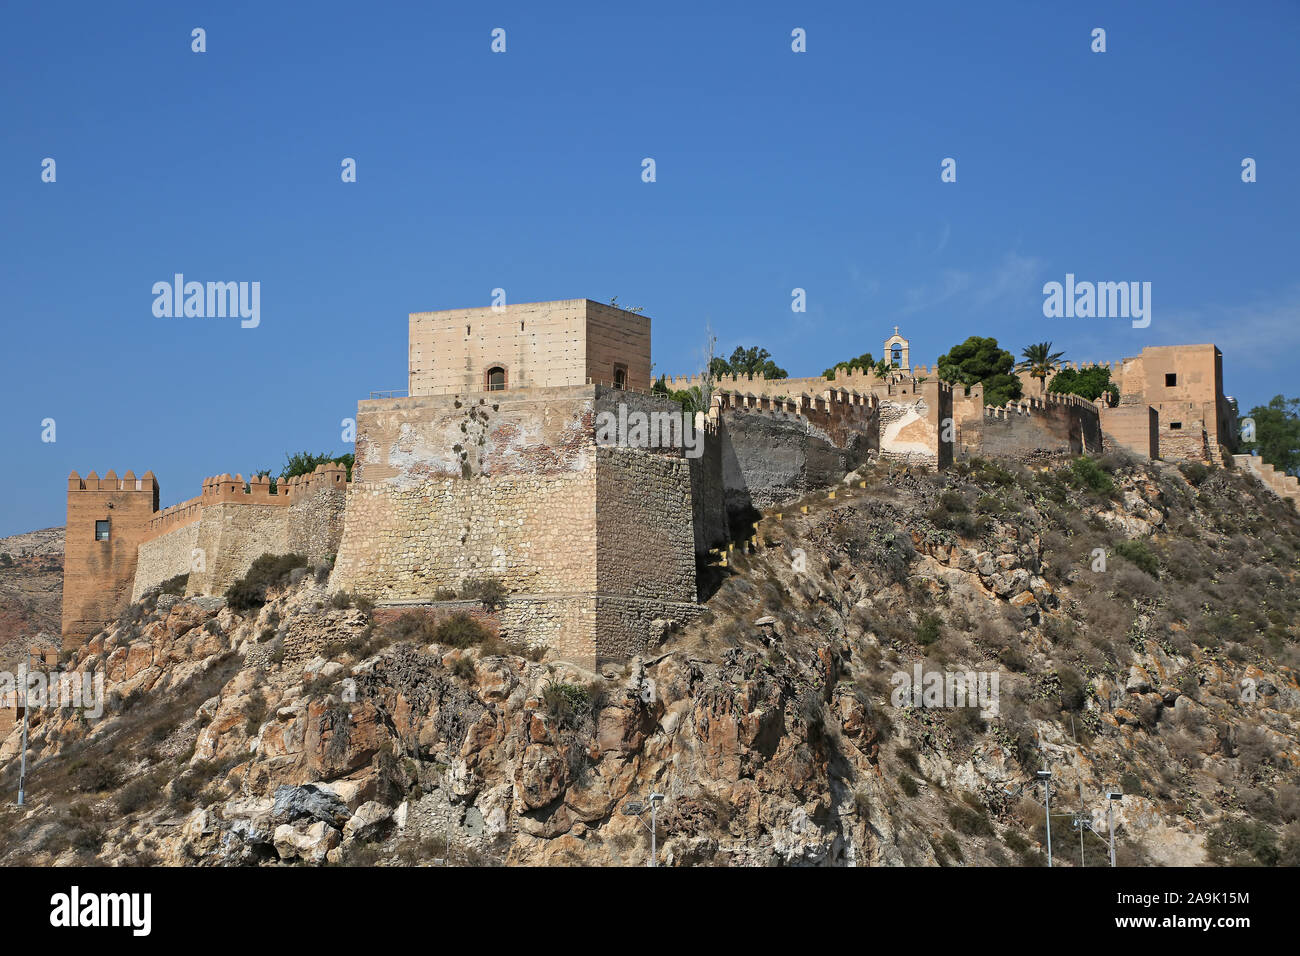 Entrée du château Alcazaba, regardant les murs fortifiés et de passerelle, Almeria Espagne Banque D'Images